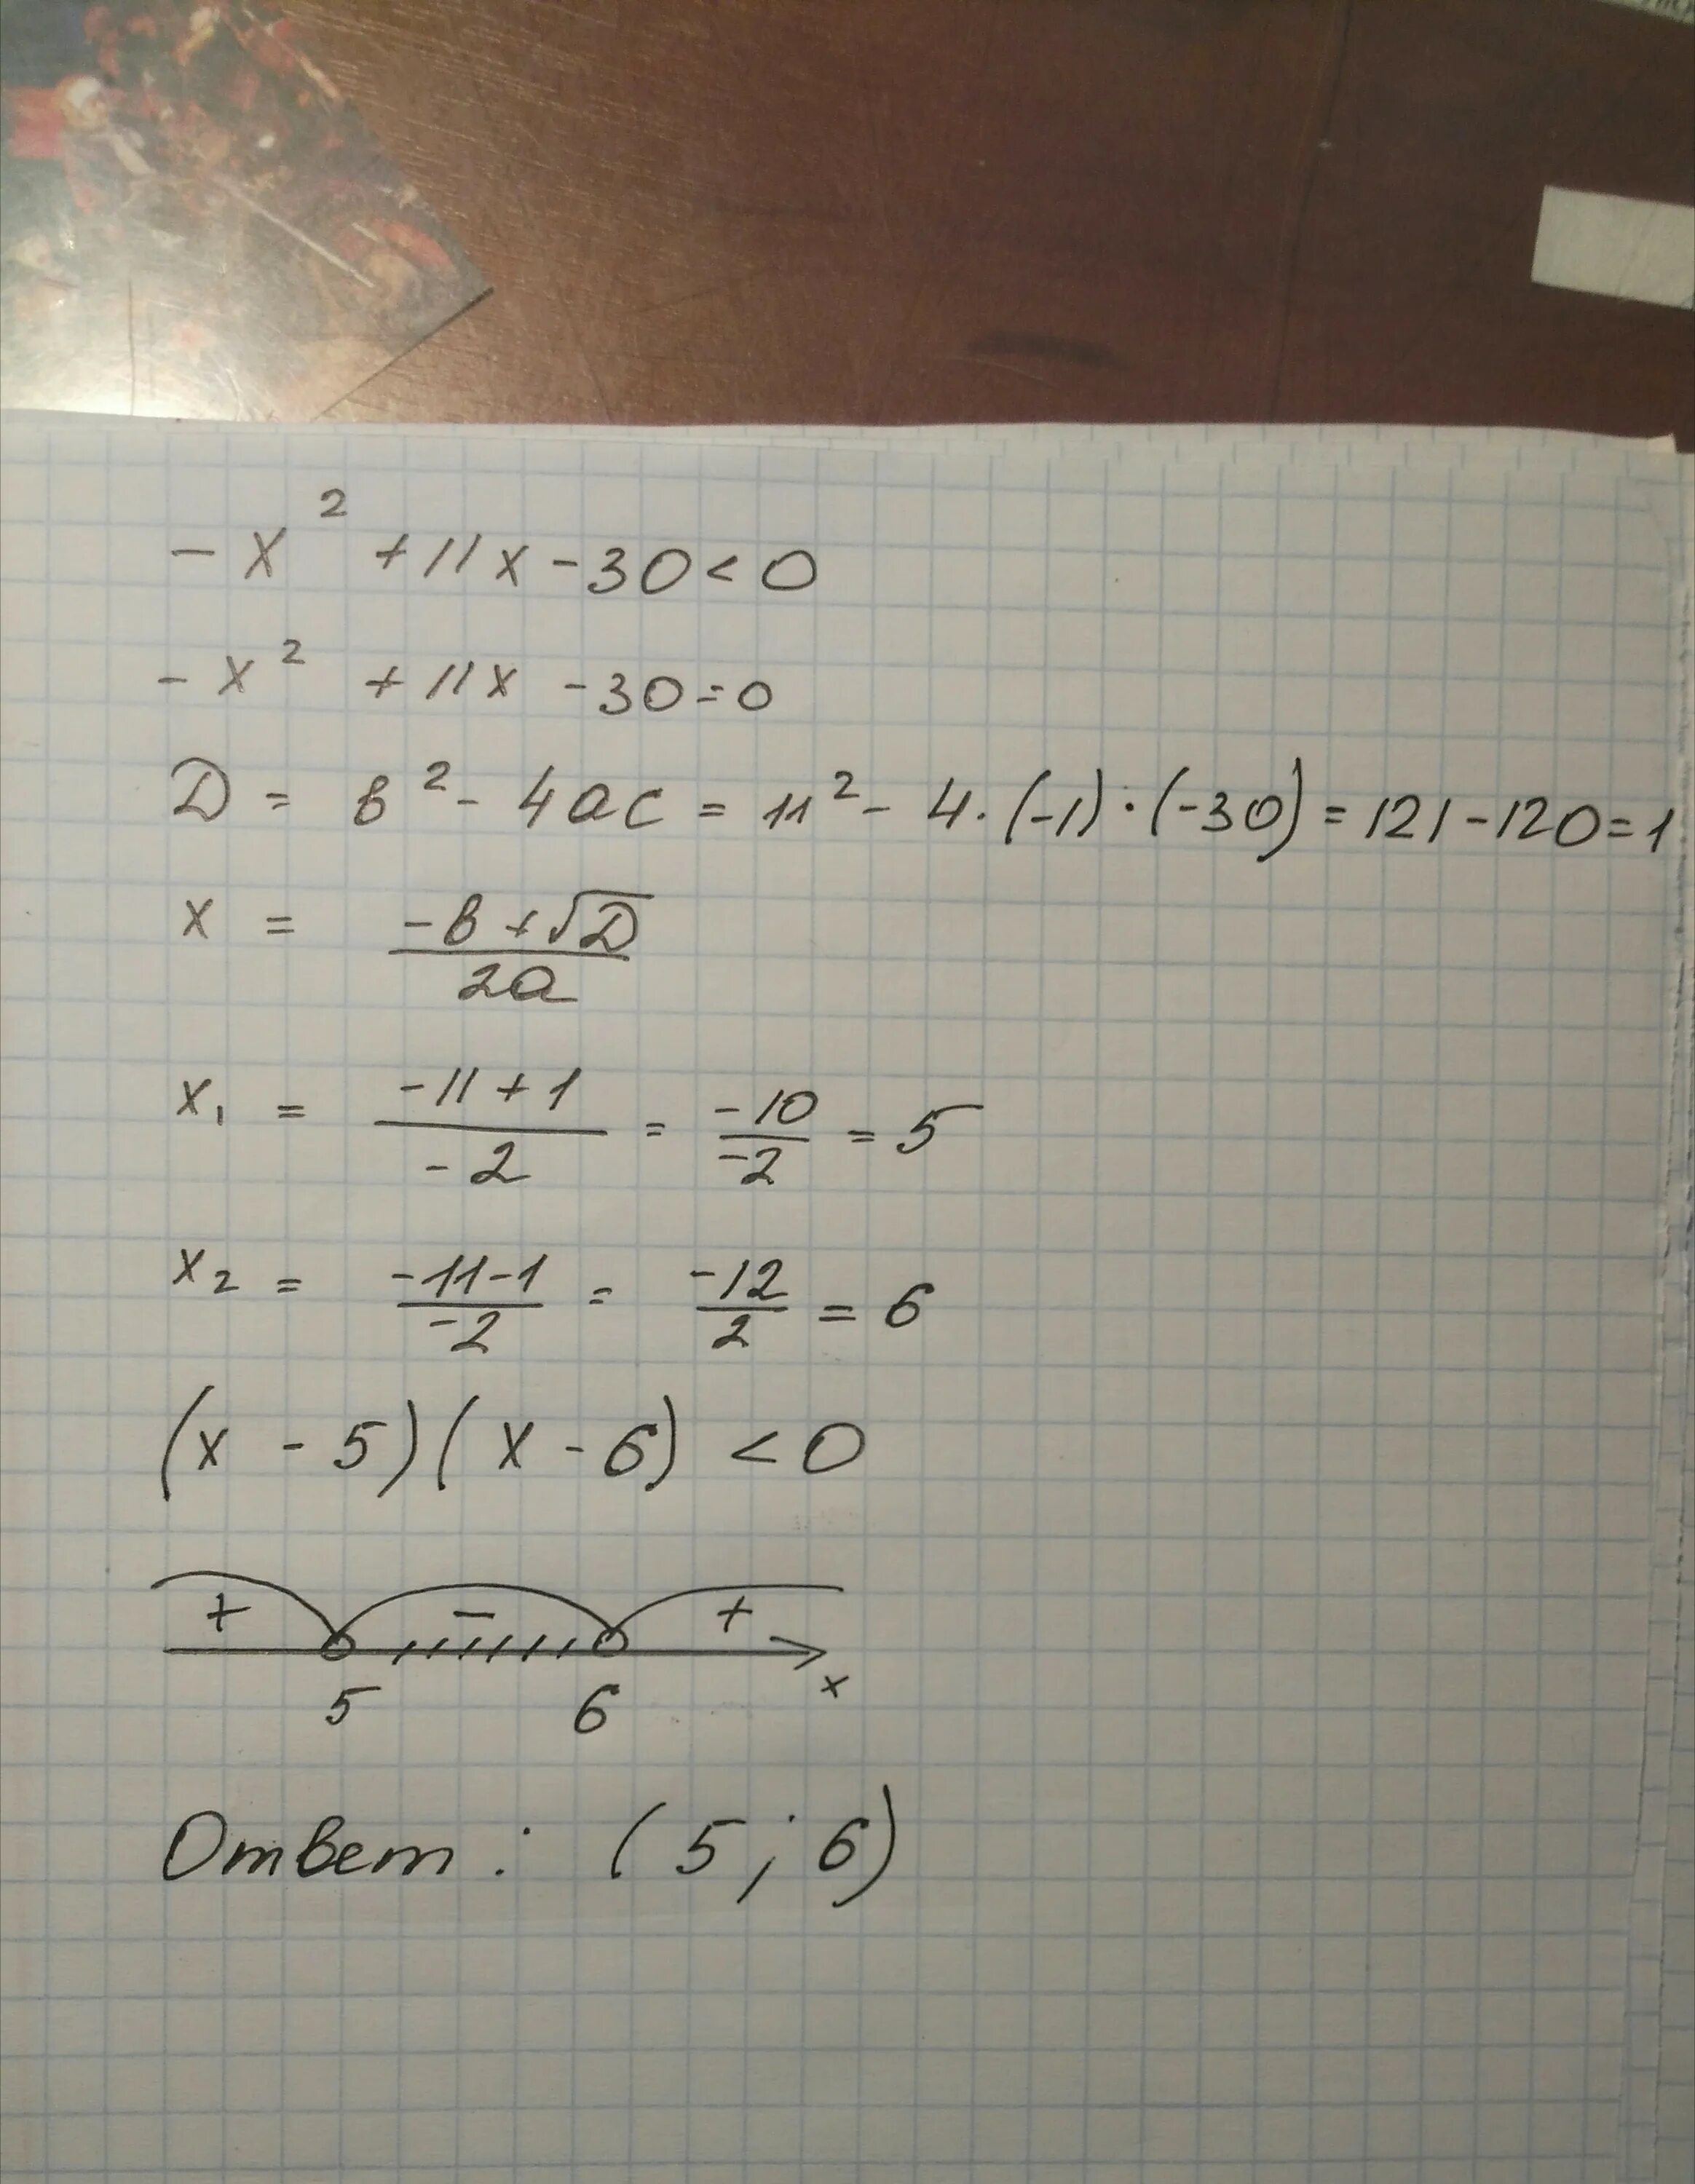 Решите неравенство x2-7x-30>0. X2-11x+30=0 решение. Х²-7х-30>0. X2-11x+30 0.